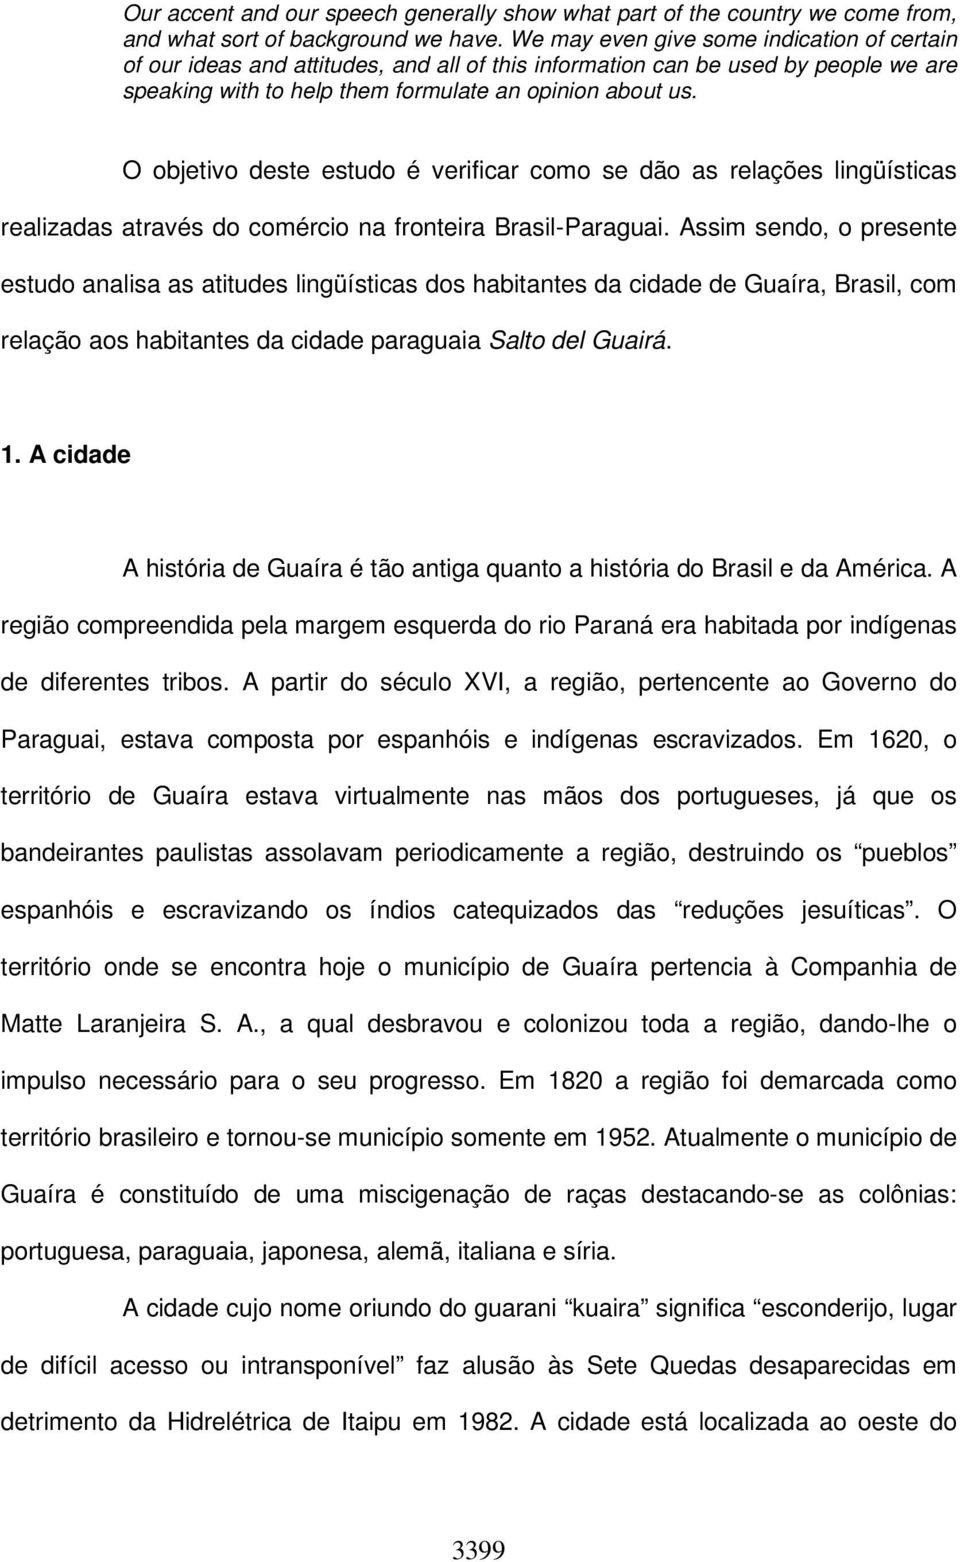 O objetivo deste estudo é verificar como se dão as relações lingüísticas realizadas através do comércio na fronteira Brasil-Paraguai.